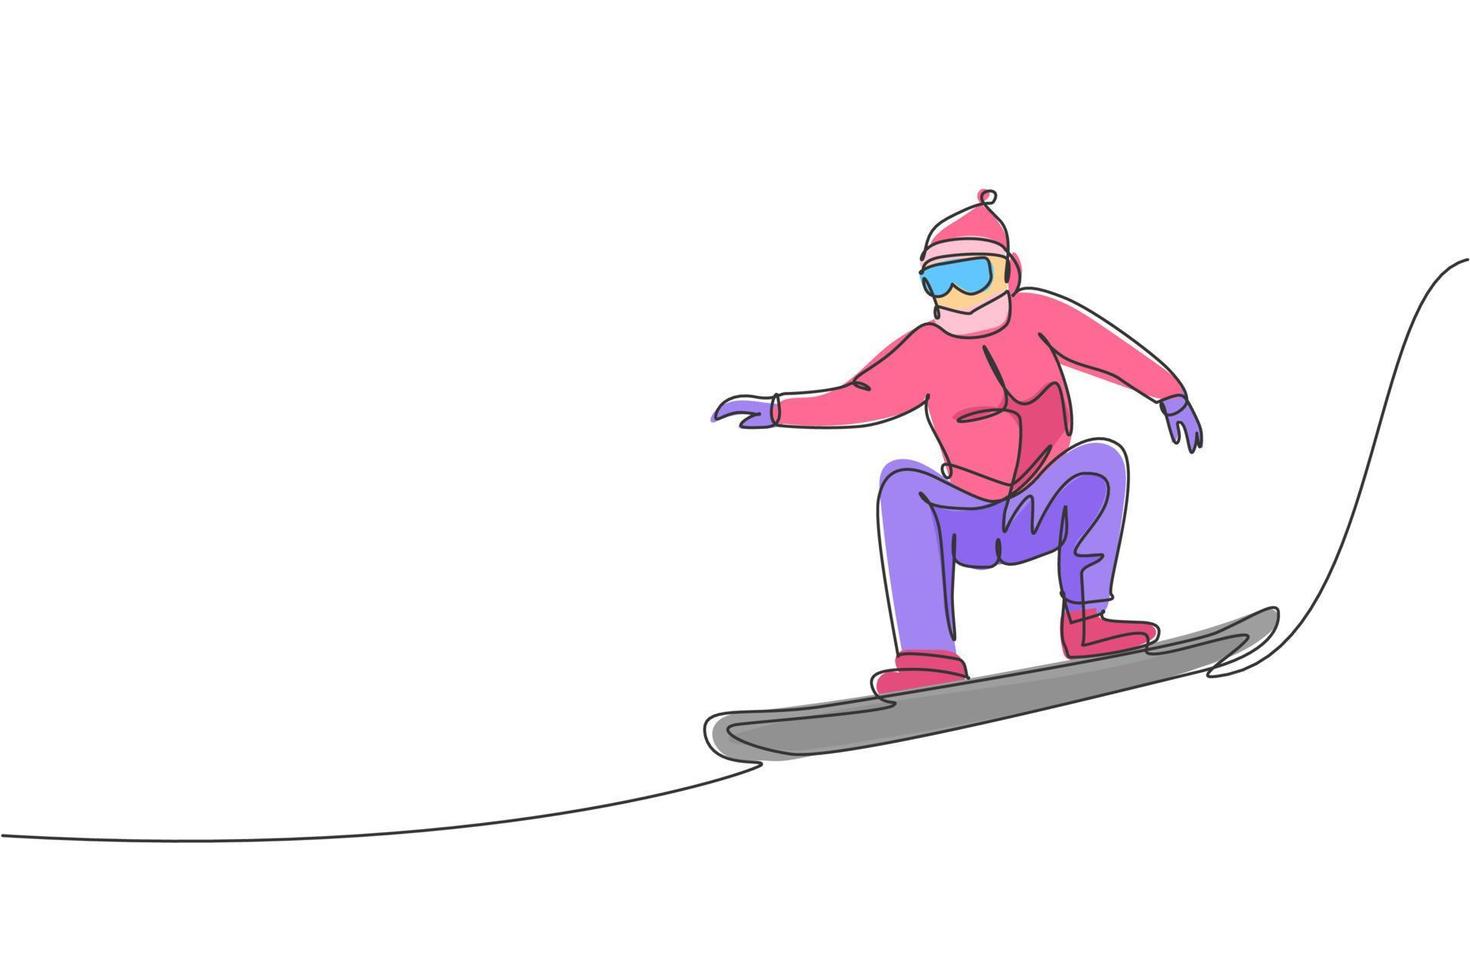 enkele doorlopende lijntekening van jonge sportieve snowboarder man springen rit snowboard op berg. extreme sporten in de buitenlucht. wintervakantie concept. trendy één lijn tekenen ontwerp vectorillustratie vector